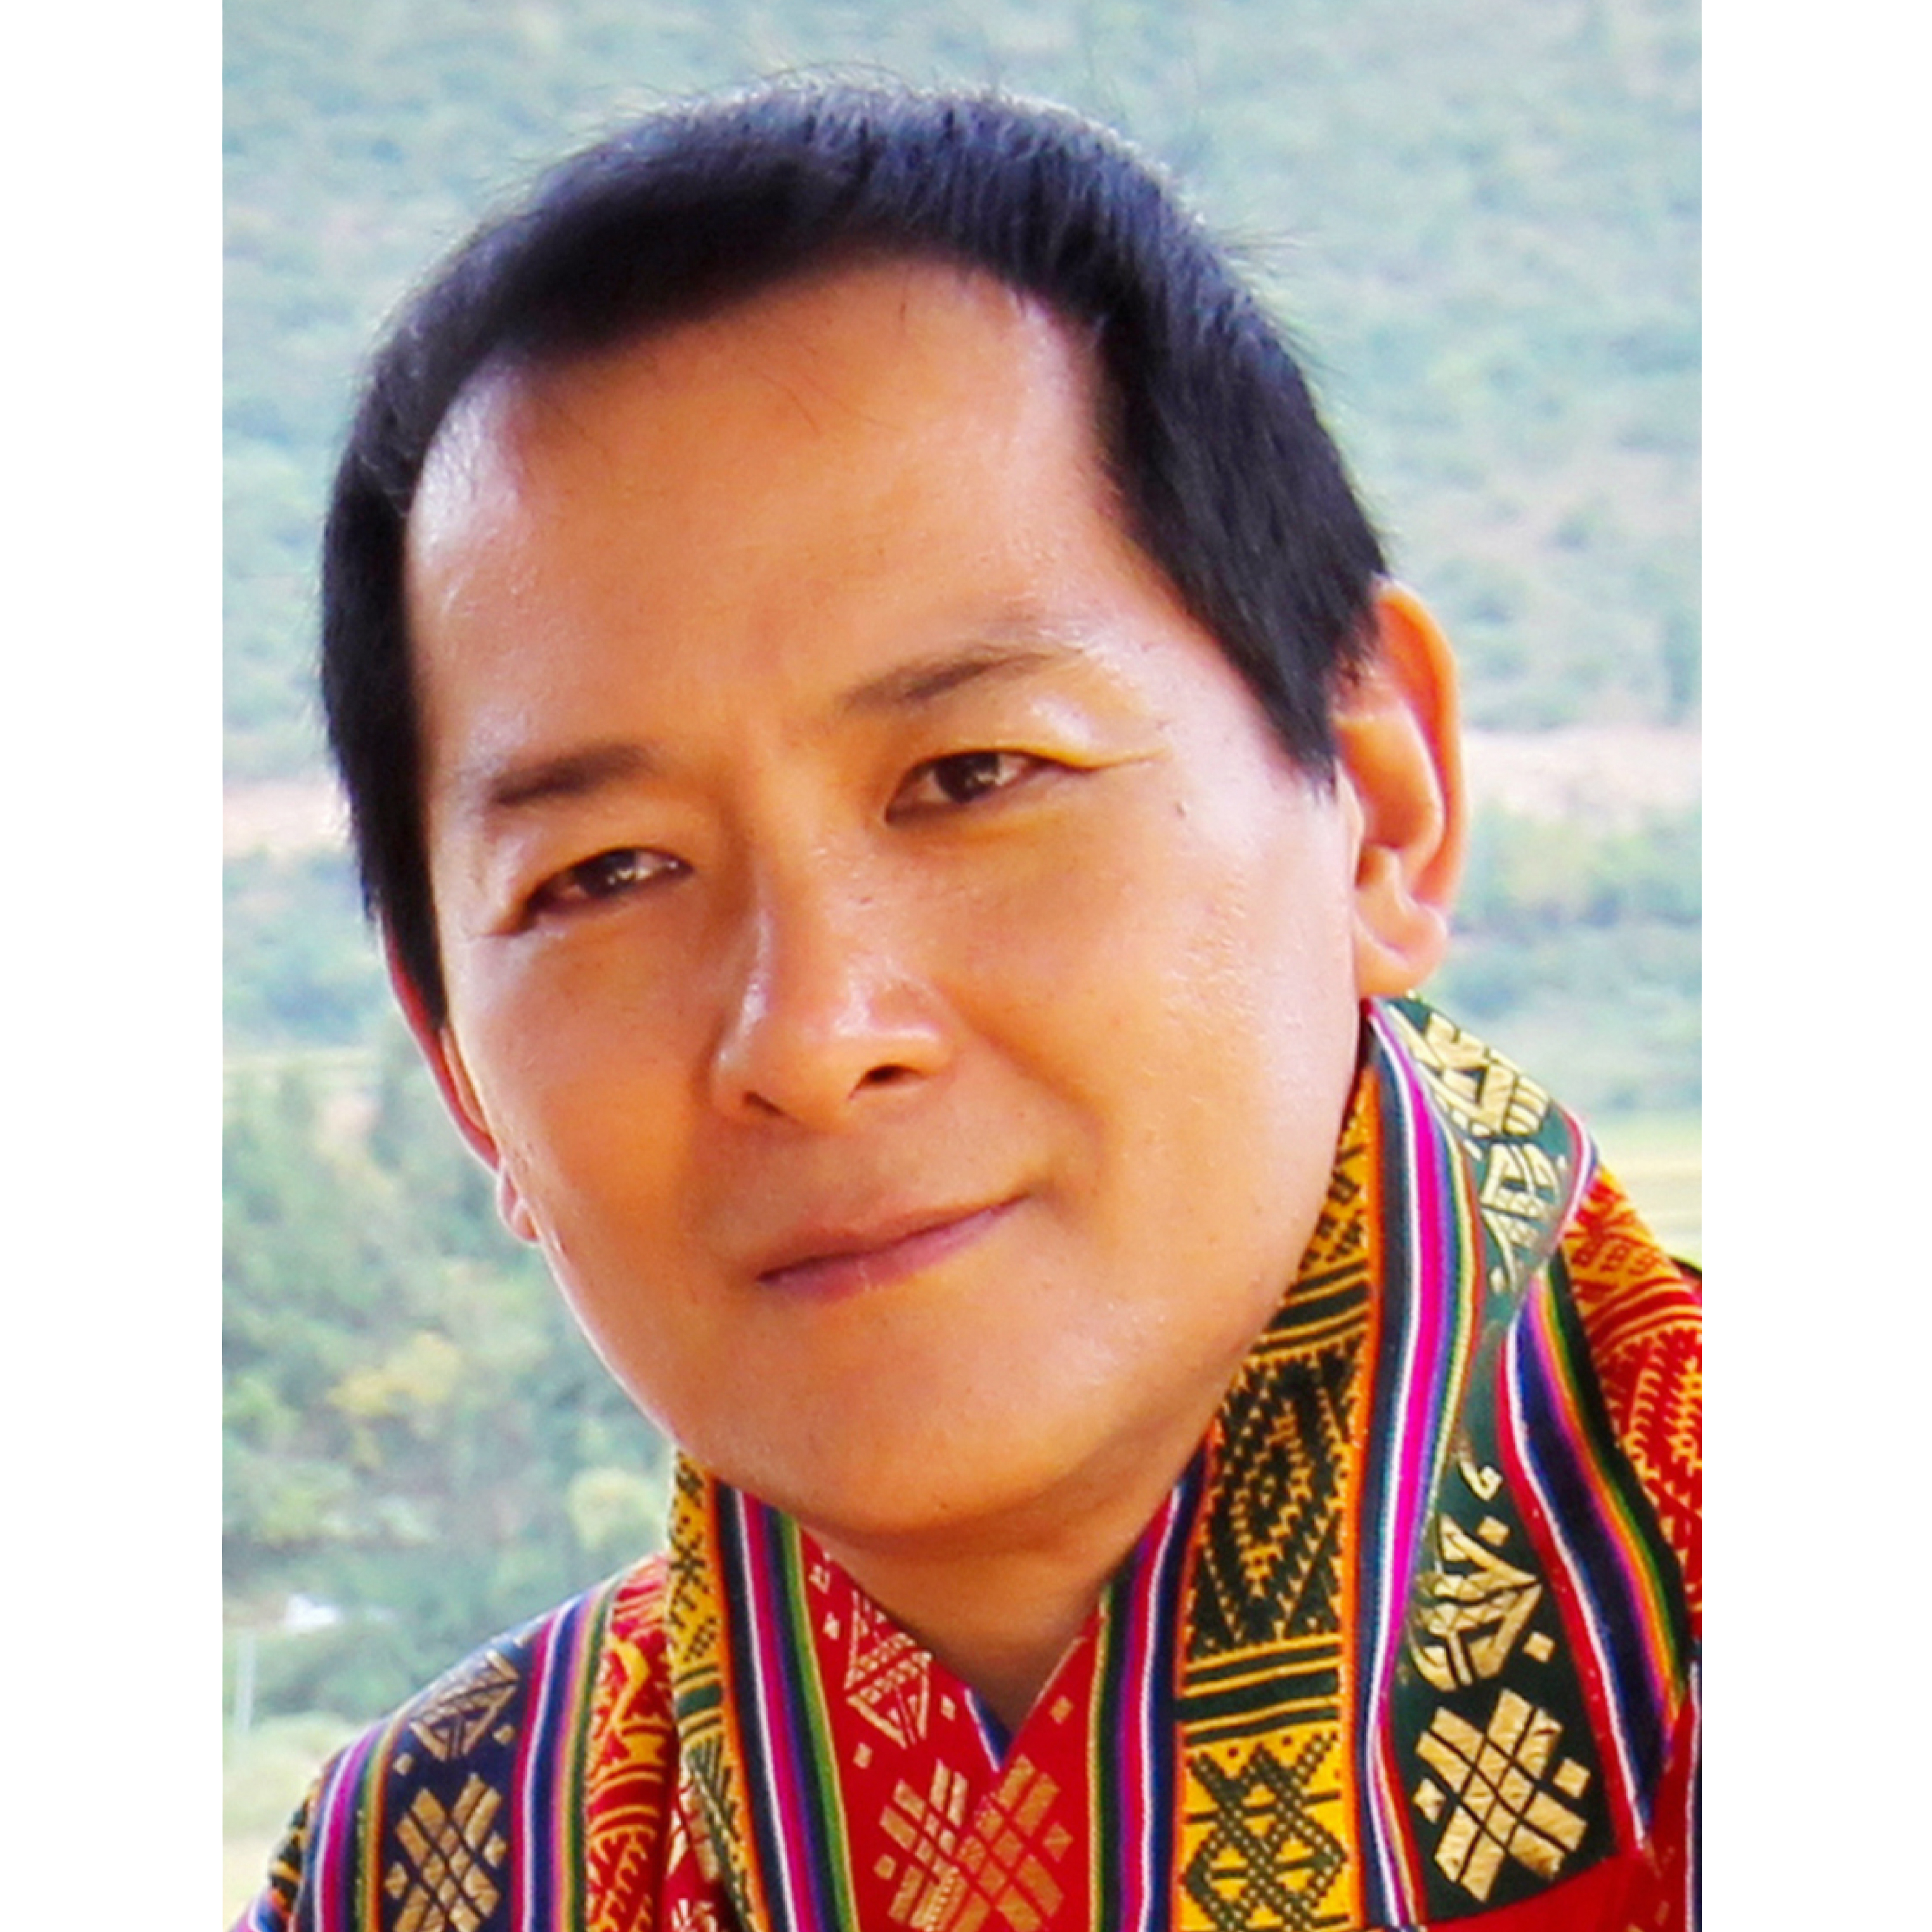 ジグミ・シンゲ・ワンチュク第4代ブータン王国国王陛下授